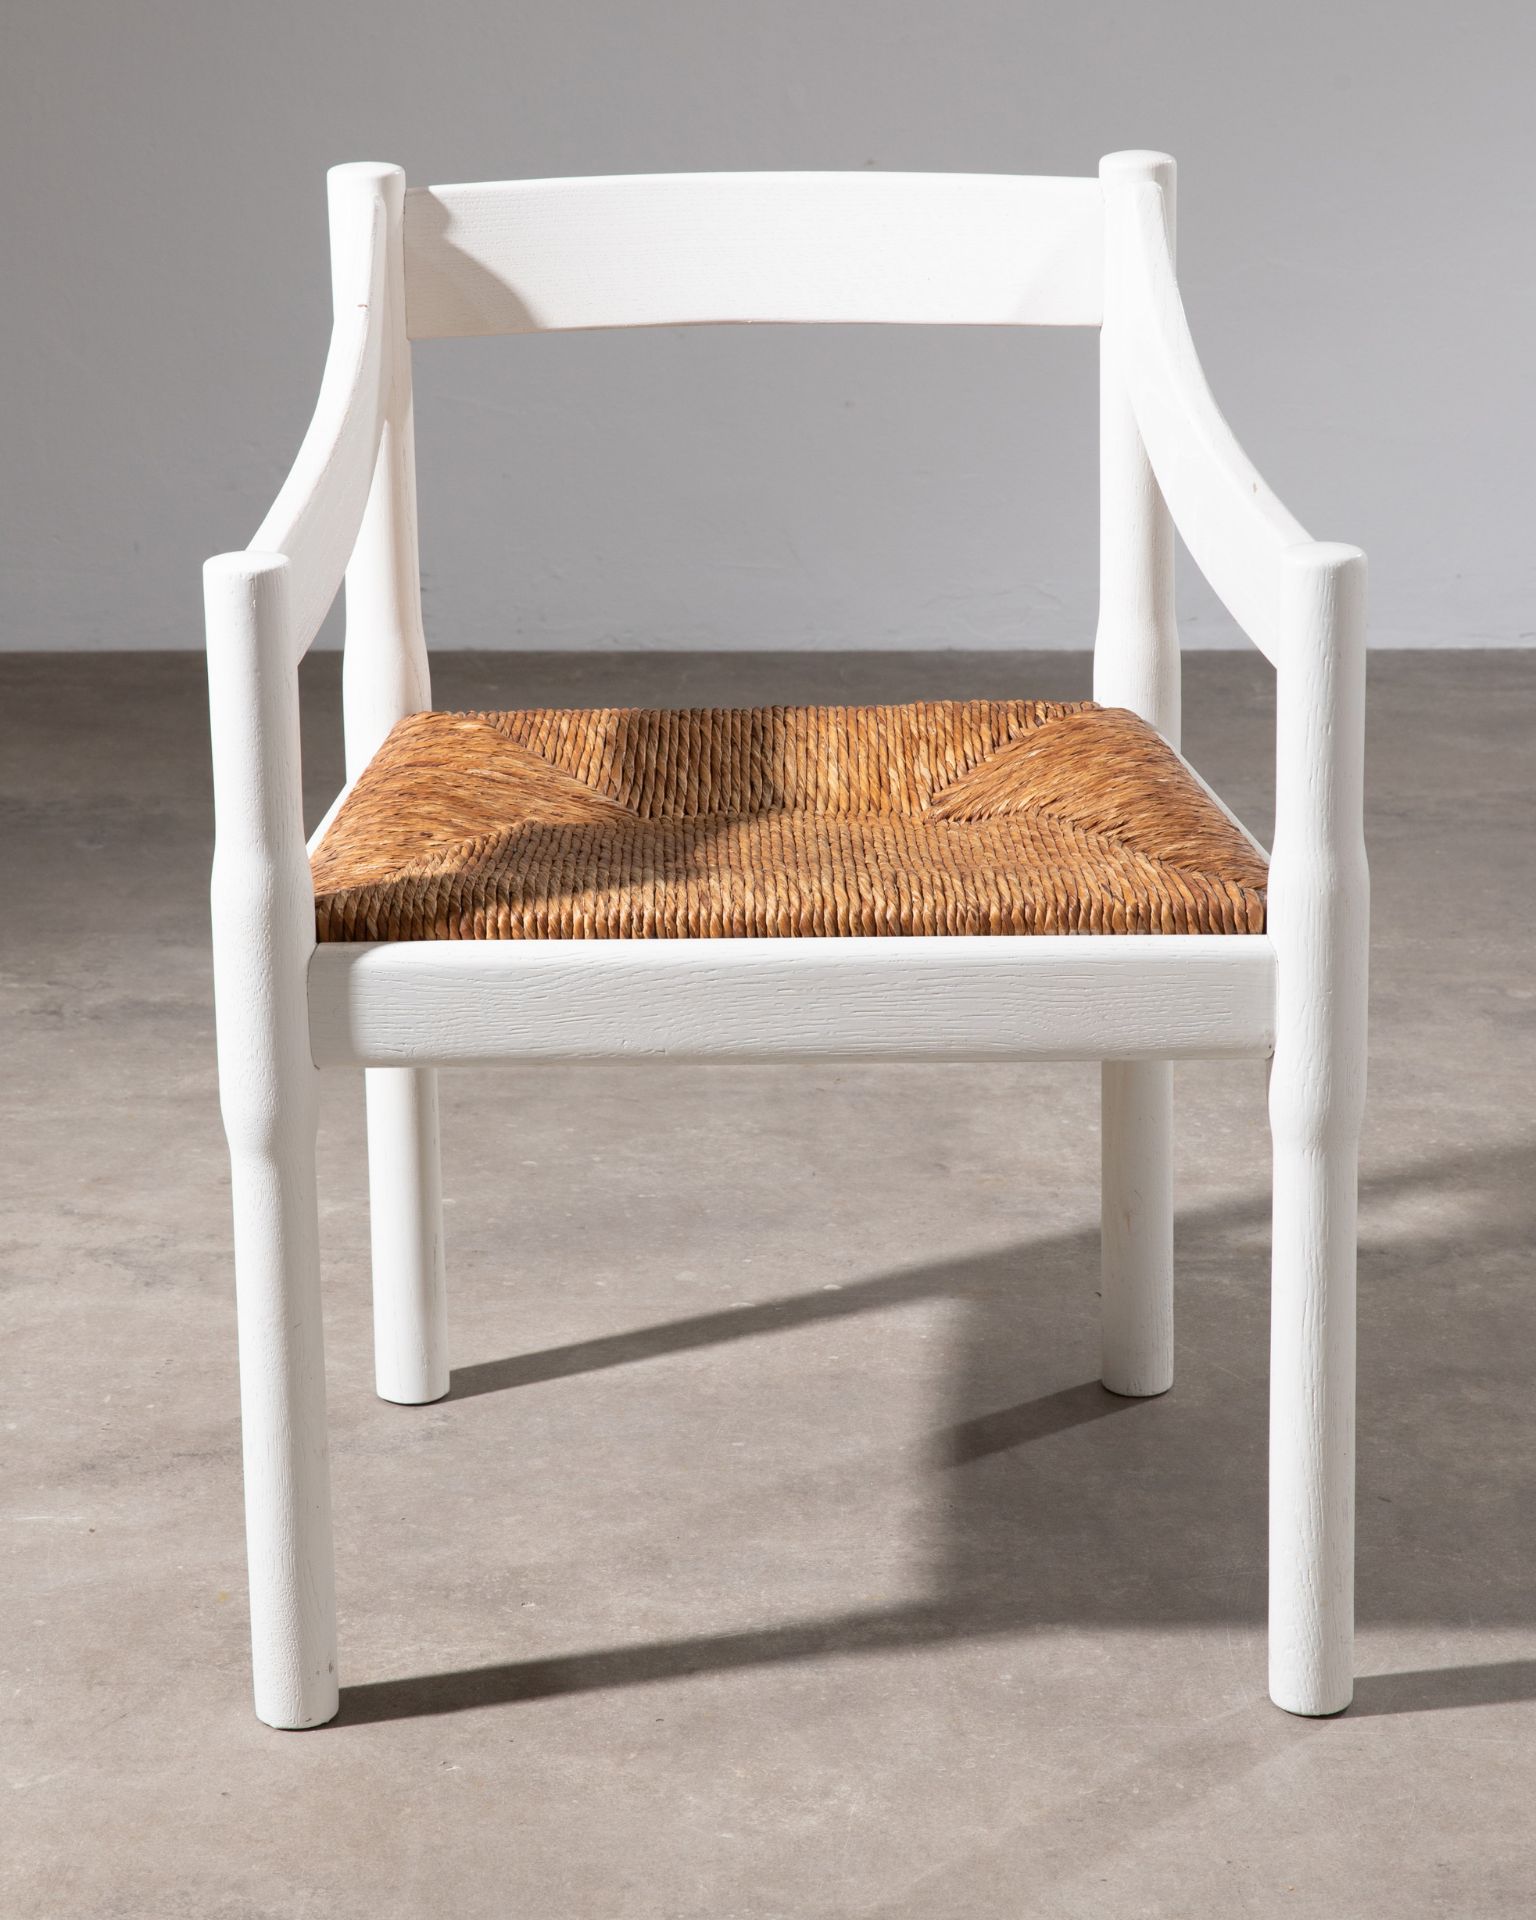 Vico Magistretti, Cassina, 6 Chairs, model Carimate - Image 3 of 6